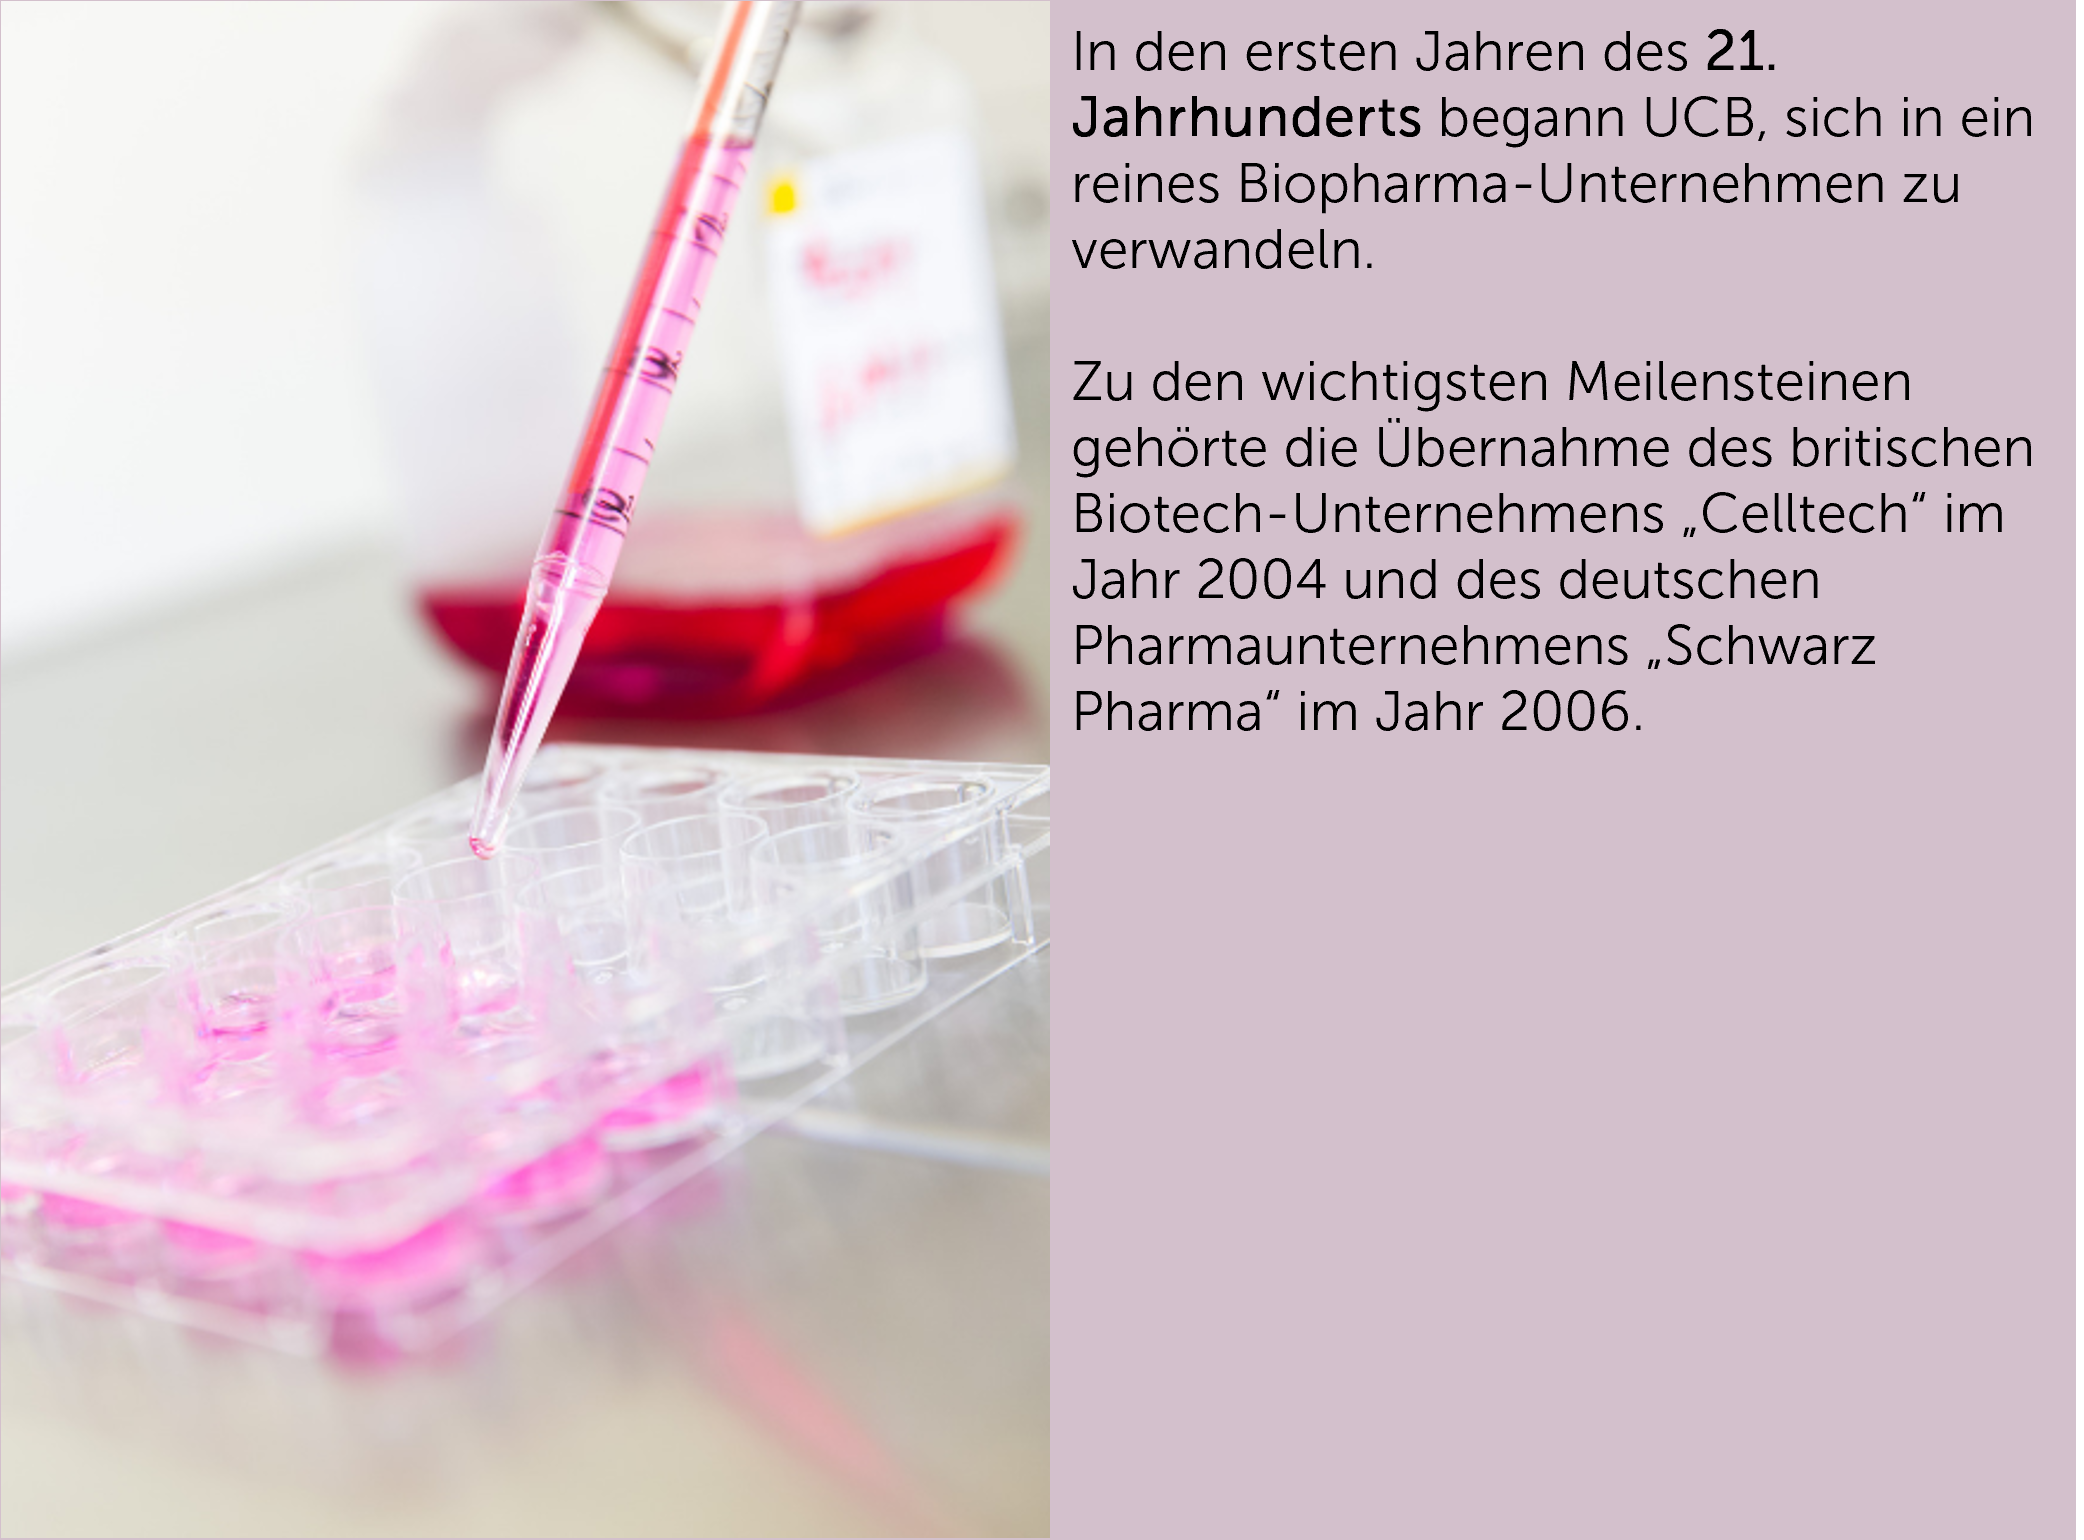 In den ersten Jahren des 21. Jahrhunderts begann UCB, sich in ein reines Biopharma-Unternehmen zu verwandeln.  Zu den wichtigsten Meilensteinen gehörte die Übernahme des britischen Biotech-Unternehmens „Celltech“ im Jahr 2004 und des deutschen Pharmaunternehmens „Schwarz Pharma“ im Jahr 2006.